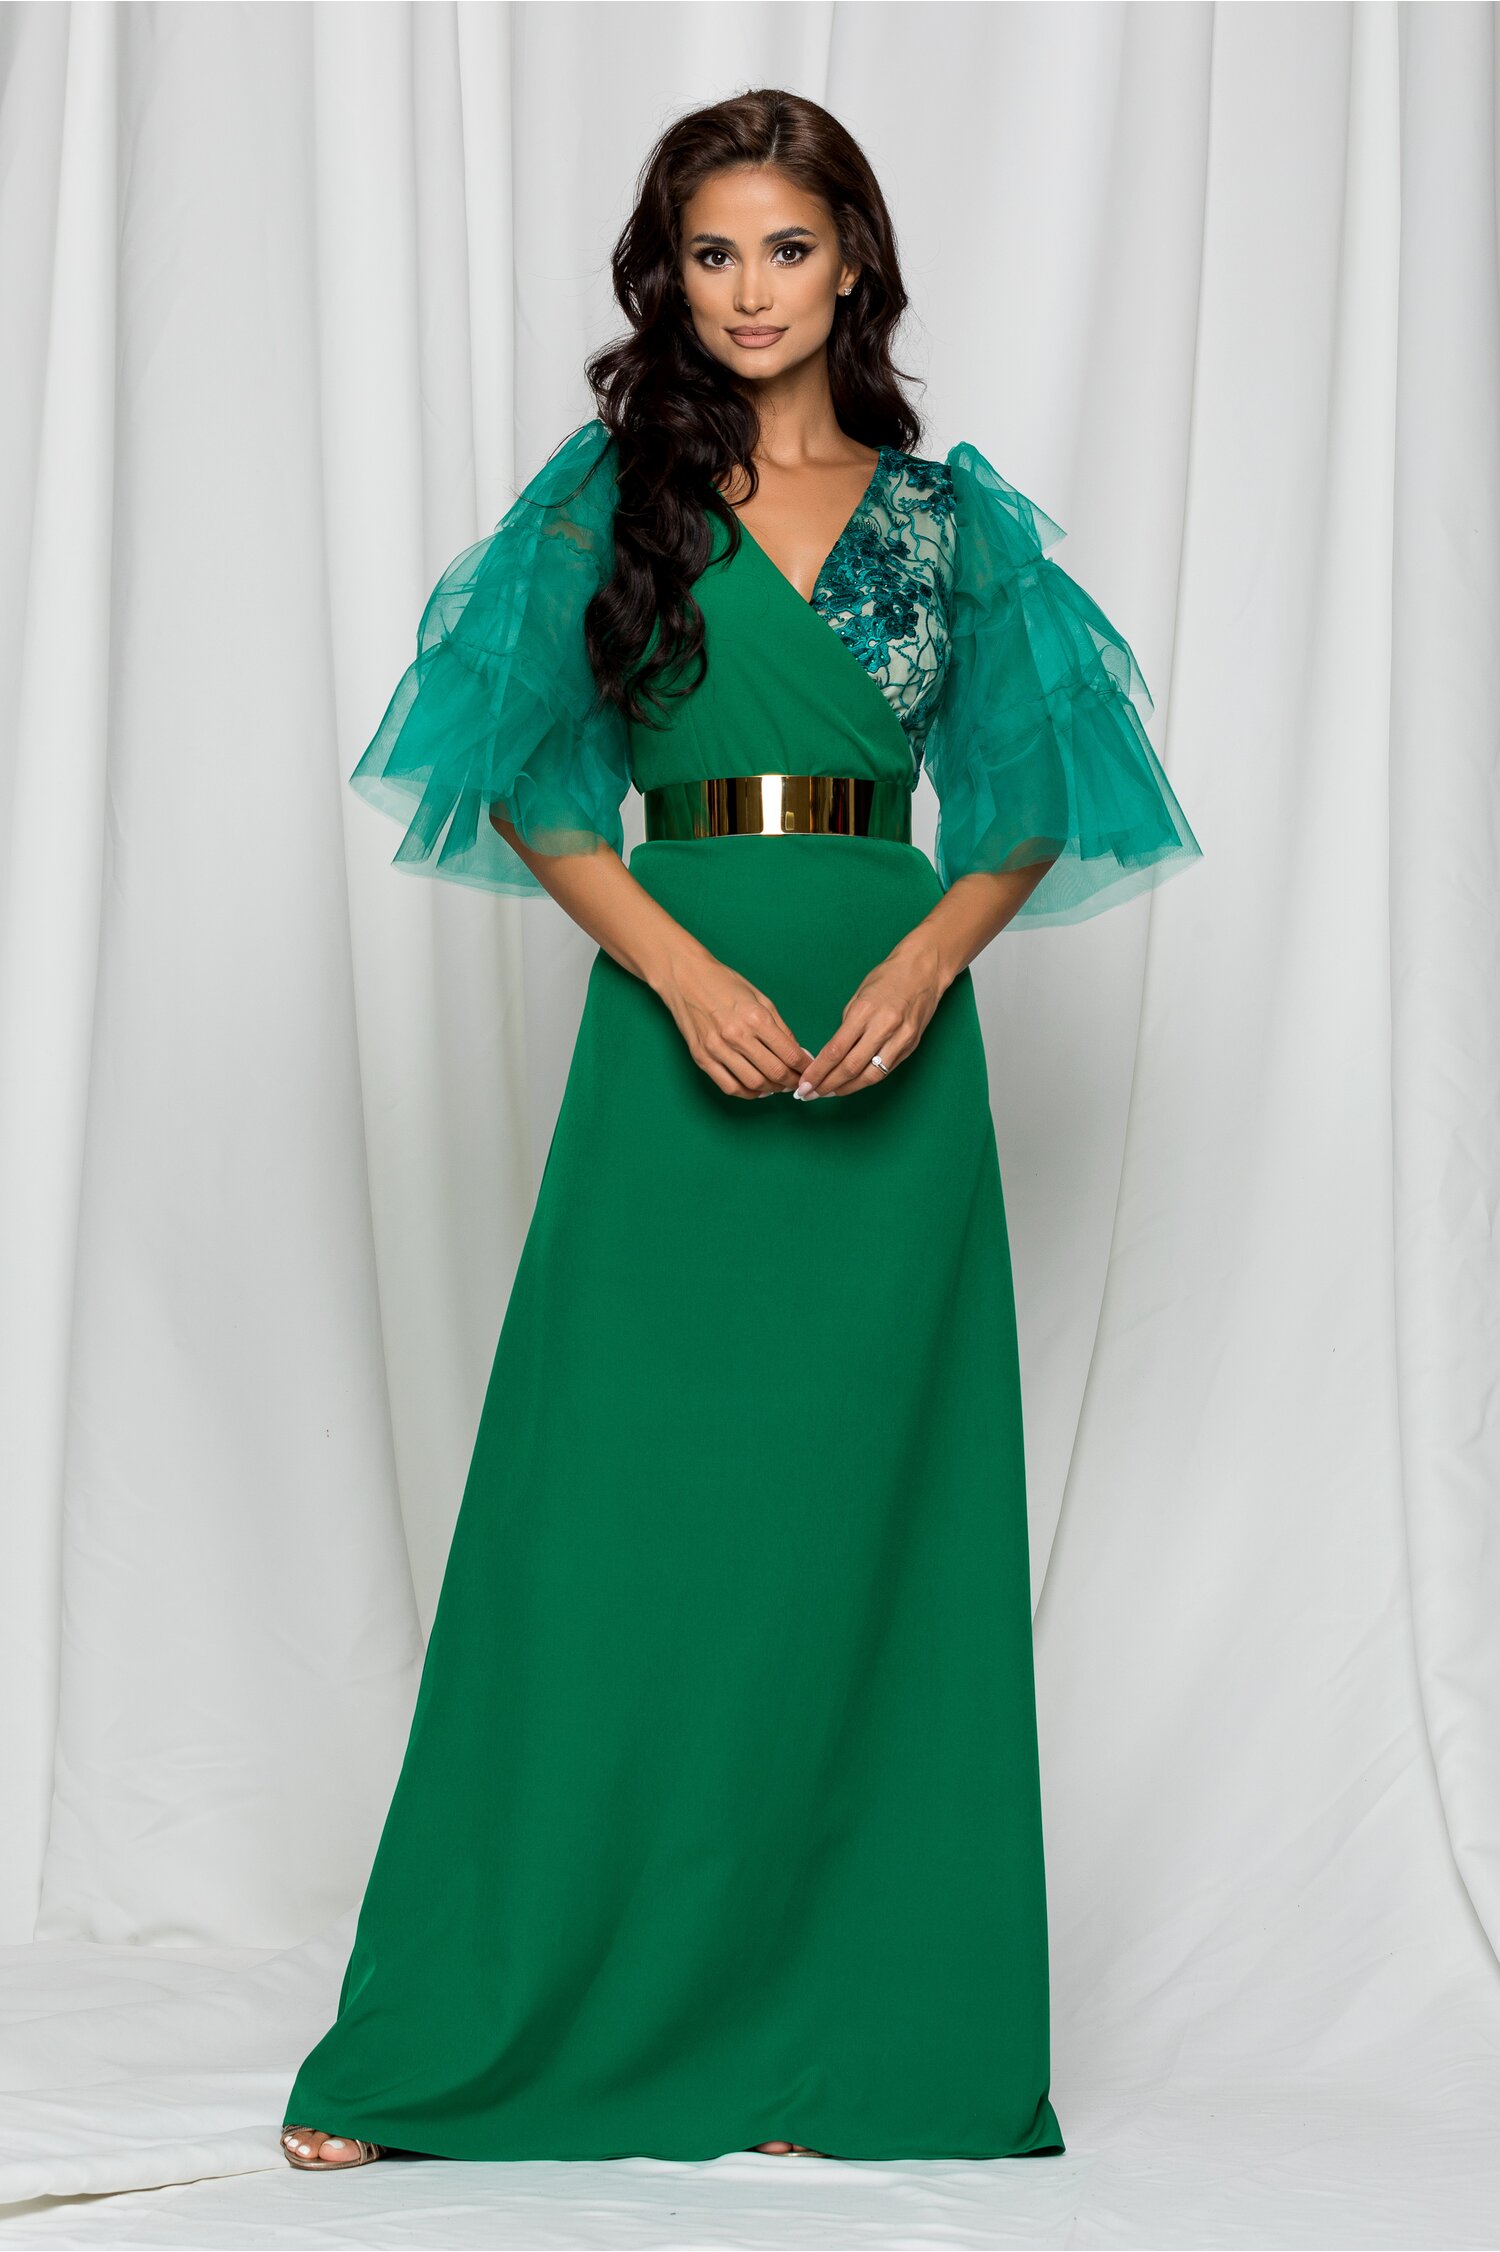 Rochie Dy Fashion Kyla lunga verde cu decolteu petrecut 2023 ❤️ Pret Super dyfashion imagine noua 2022